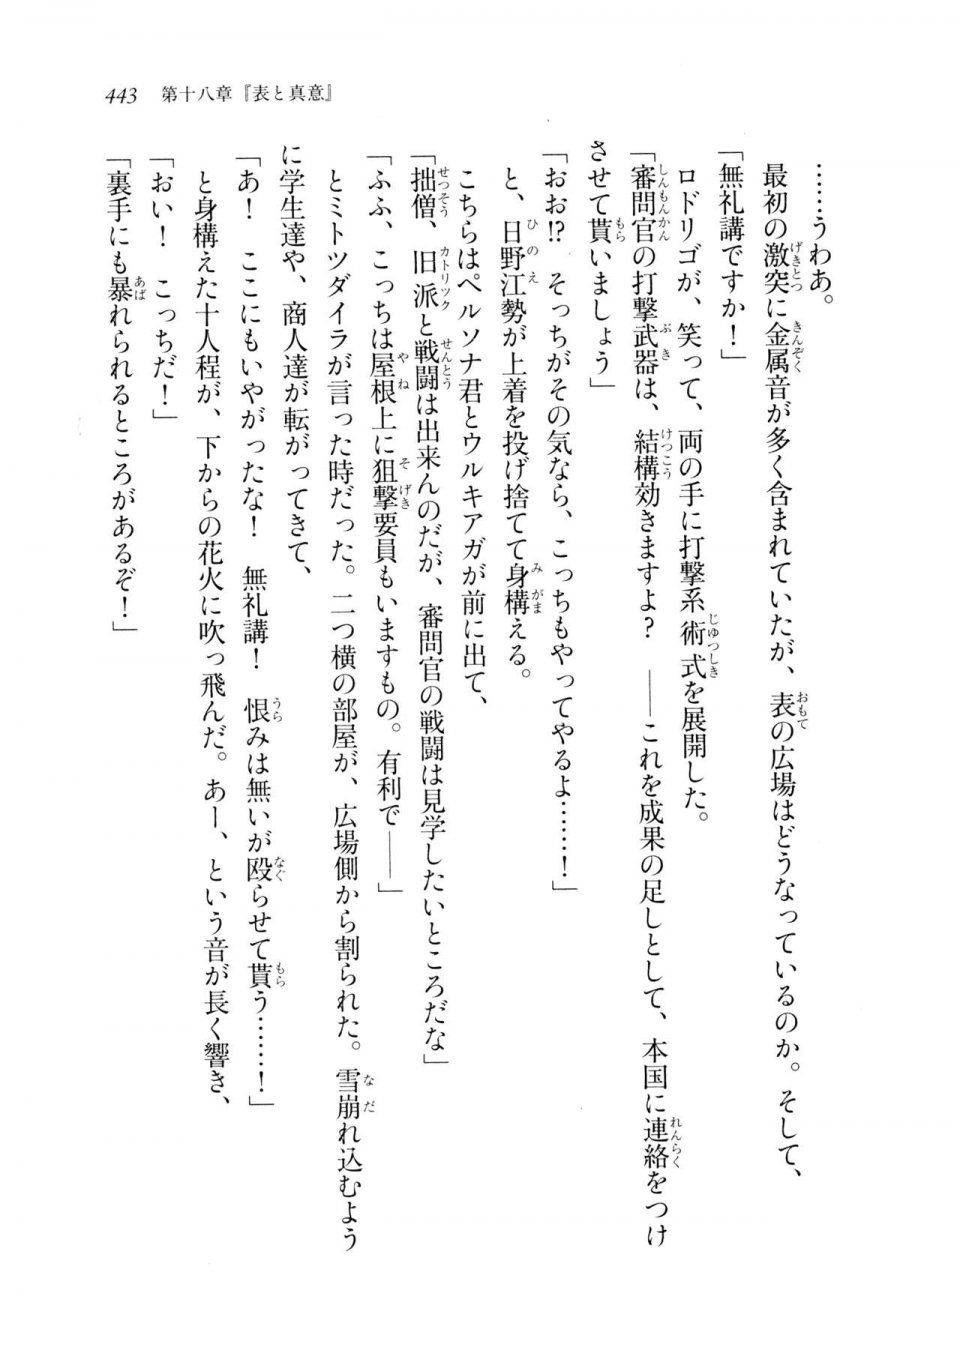 Kyoukai Senjou no Horizon LN Sidestory Vol 2 - Photo #441